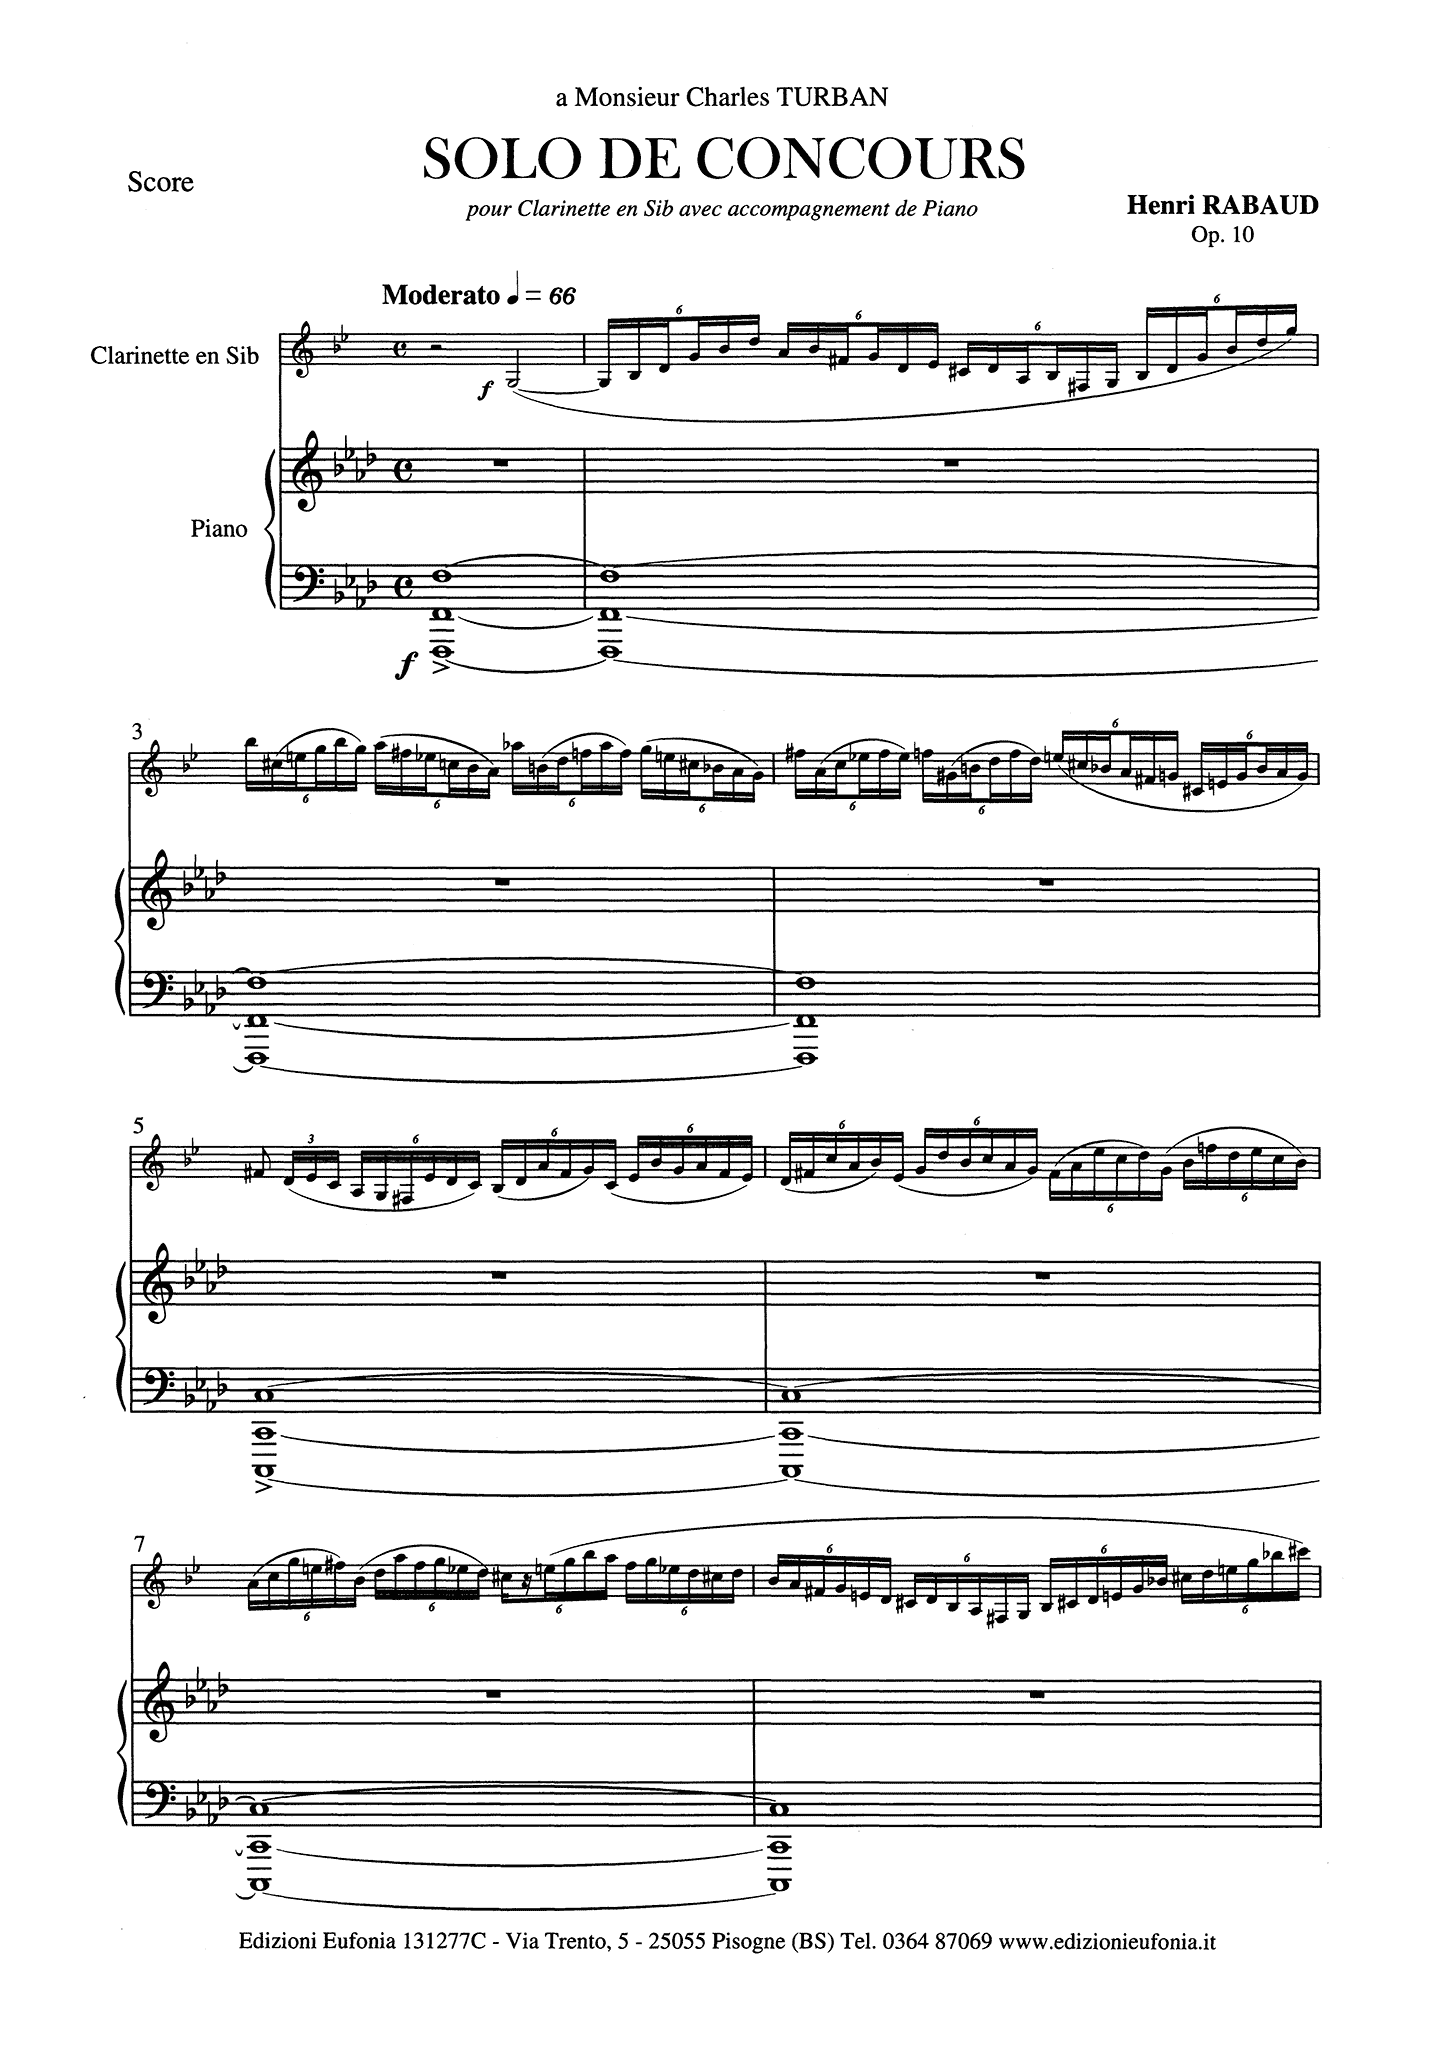 Solo de concours, Op. 10 Score